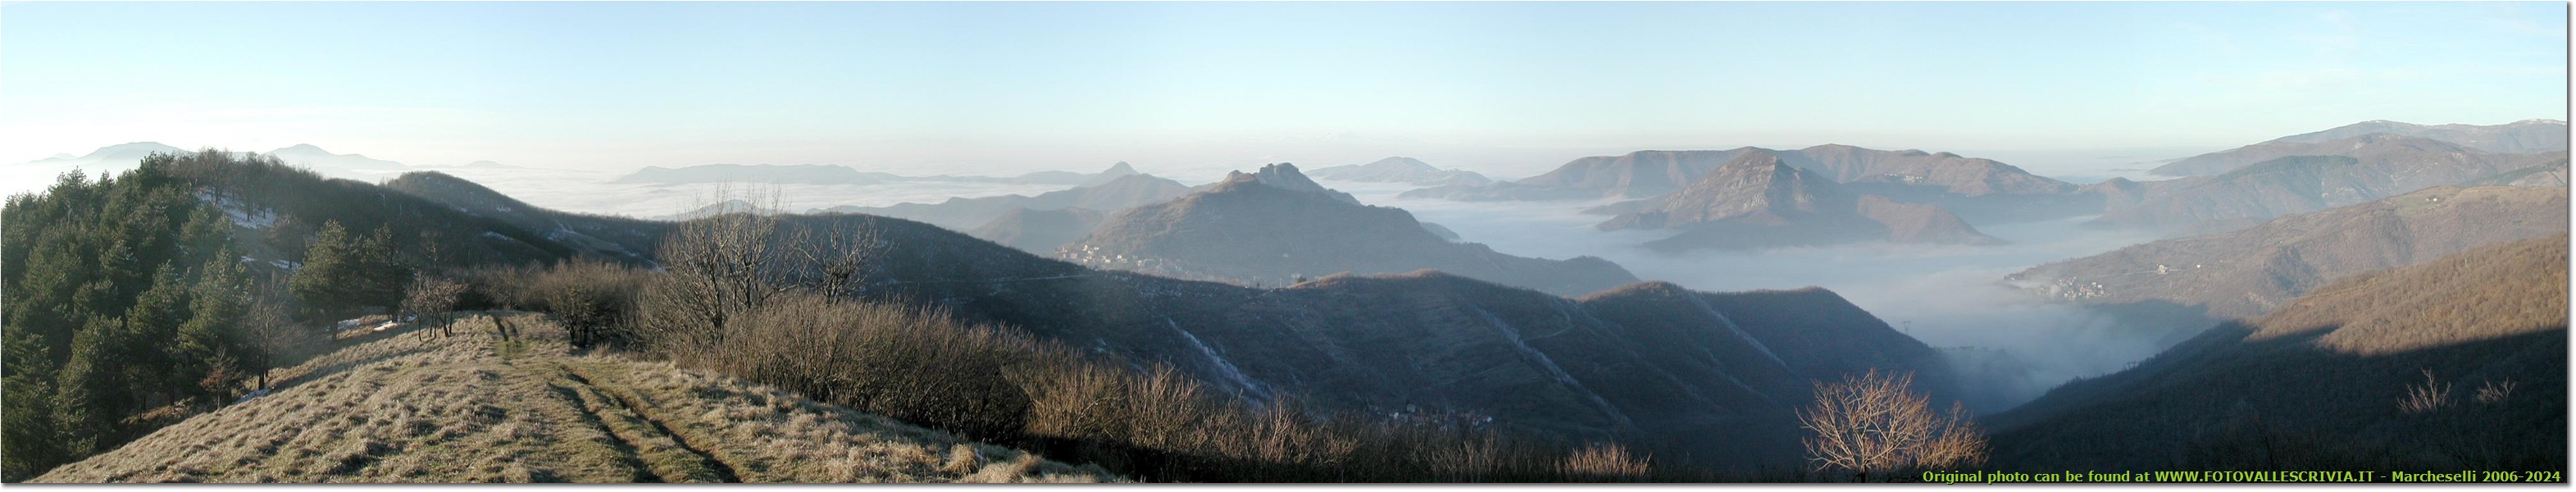 Valle Scrivia e Vobbia nella nebbia - Crocefieschi&Vobbia - 2005 - Panorami - Inverno - Olympus Camedia 3000